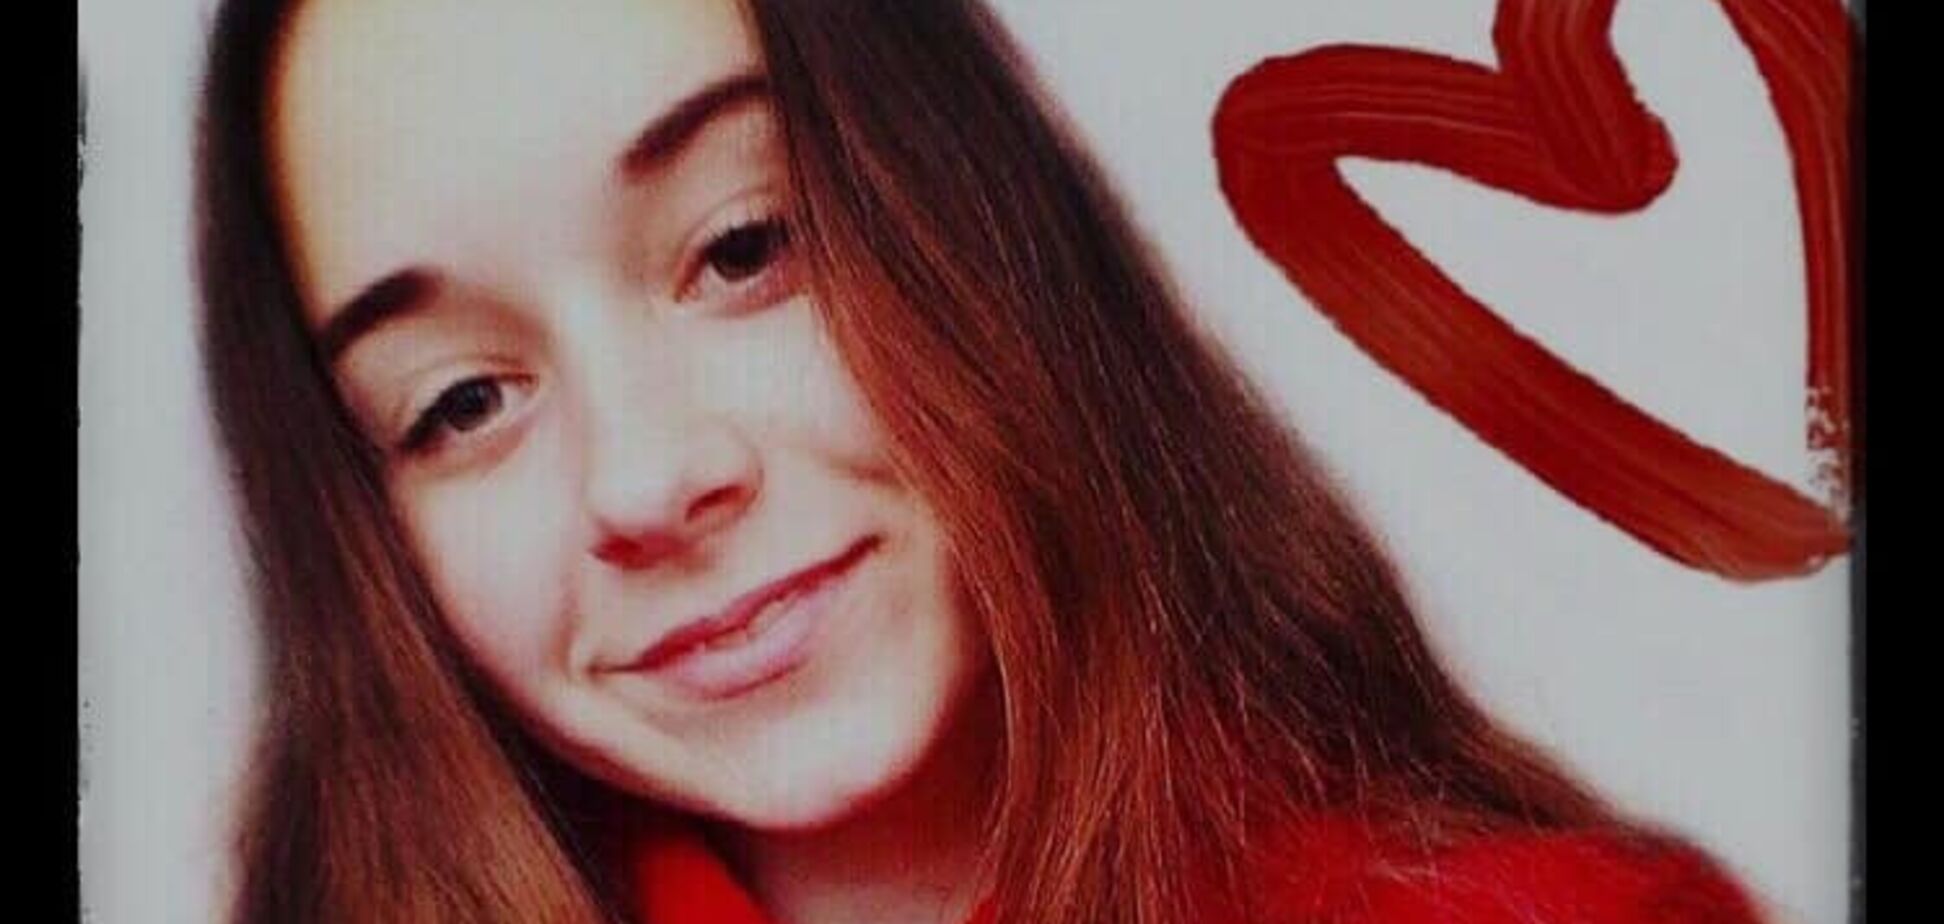  Пока искали таблетку: на Львовщине 15-летняя девочка умерла от головной боли